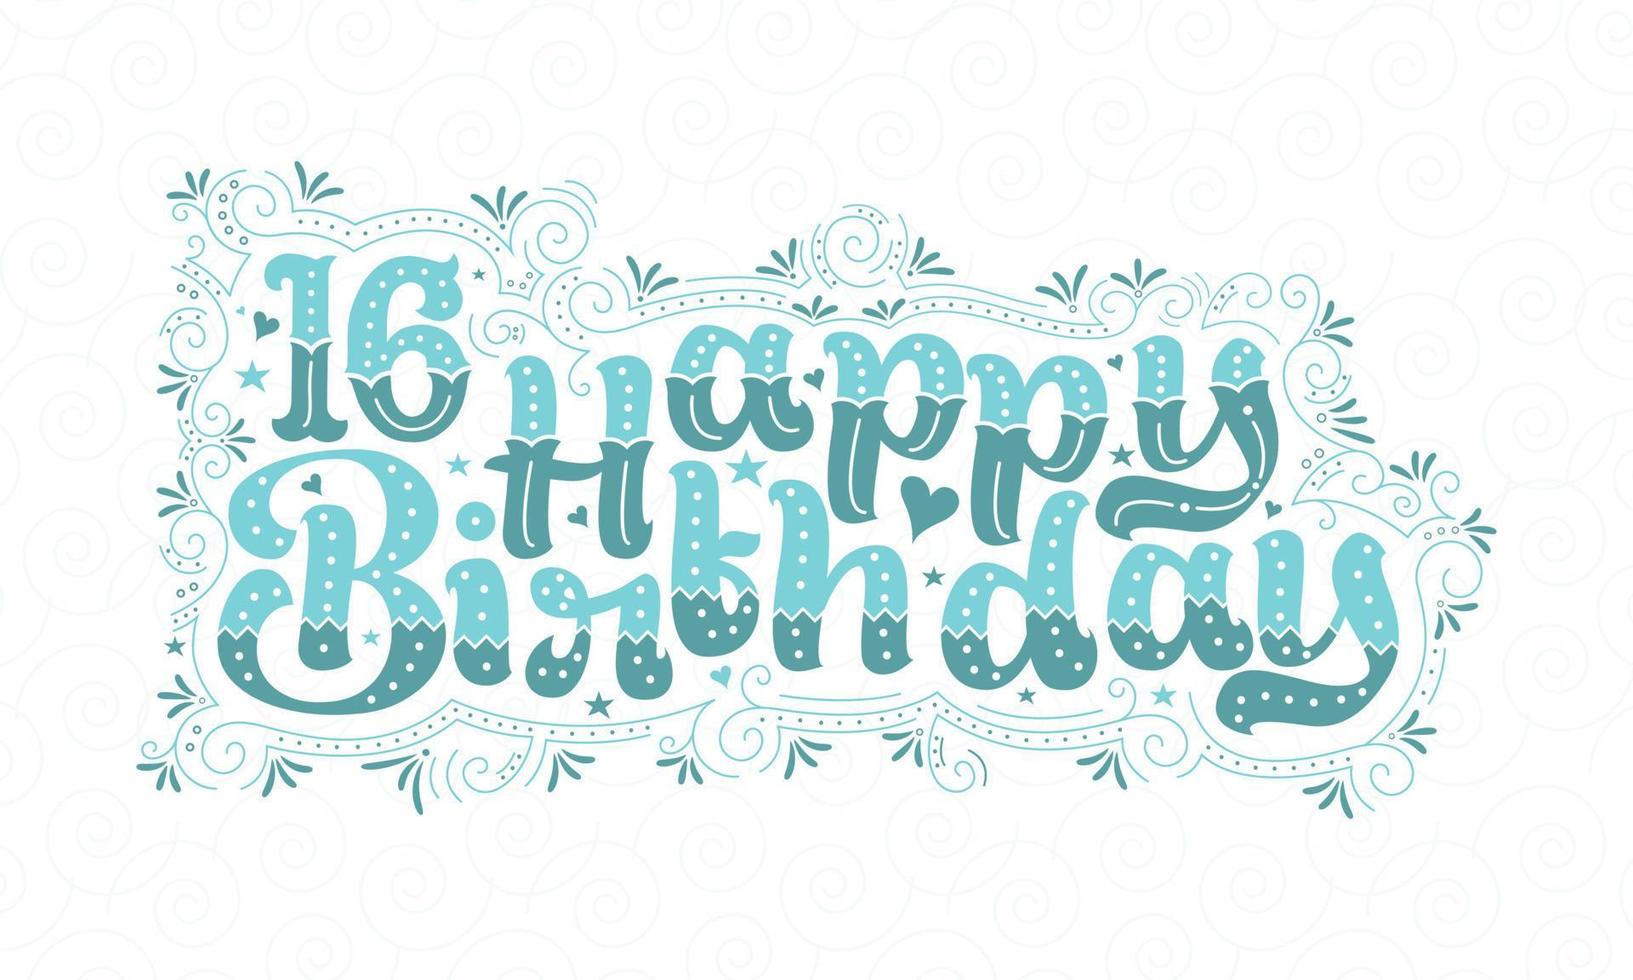 16e gelukkige verjaardag belettering, 16 jaar verjaardag mooi typografieontwerp met aqua stippen, lijnen en bladeren. vector